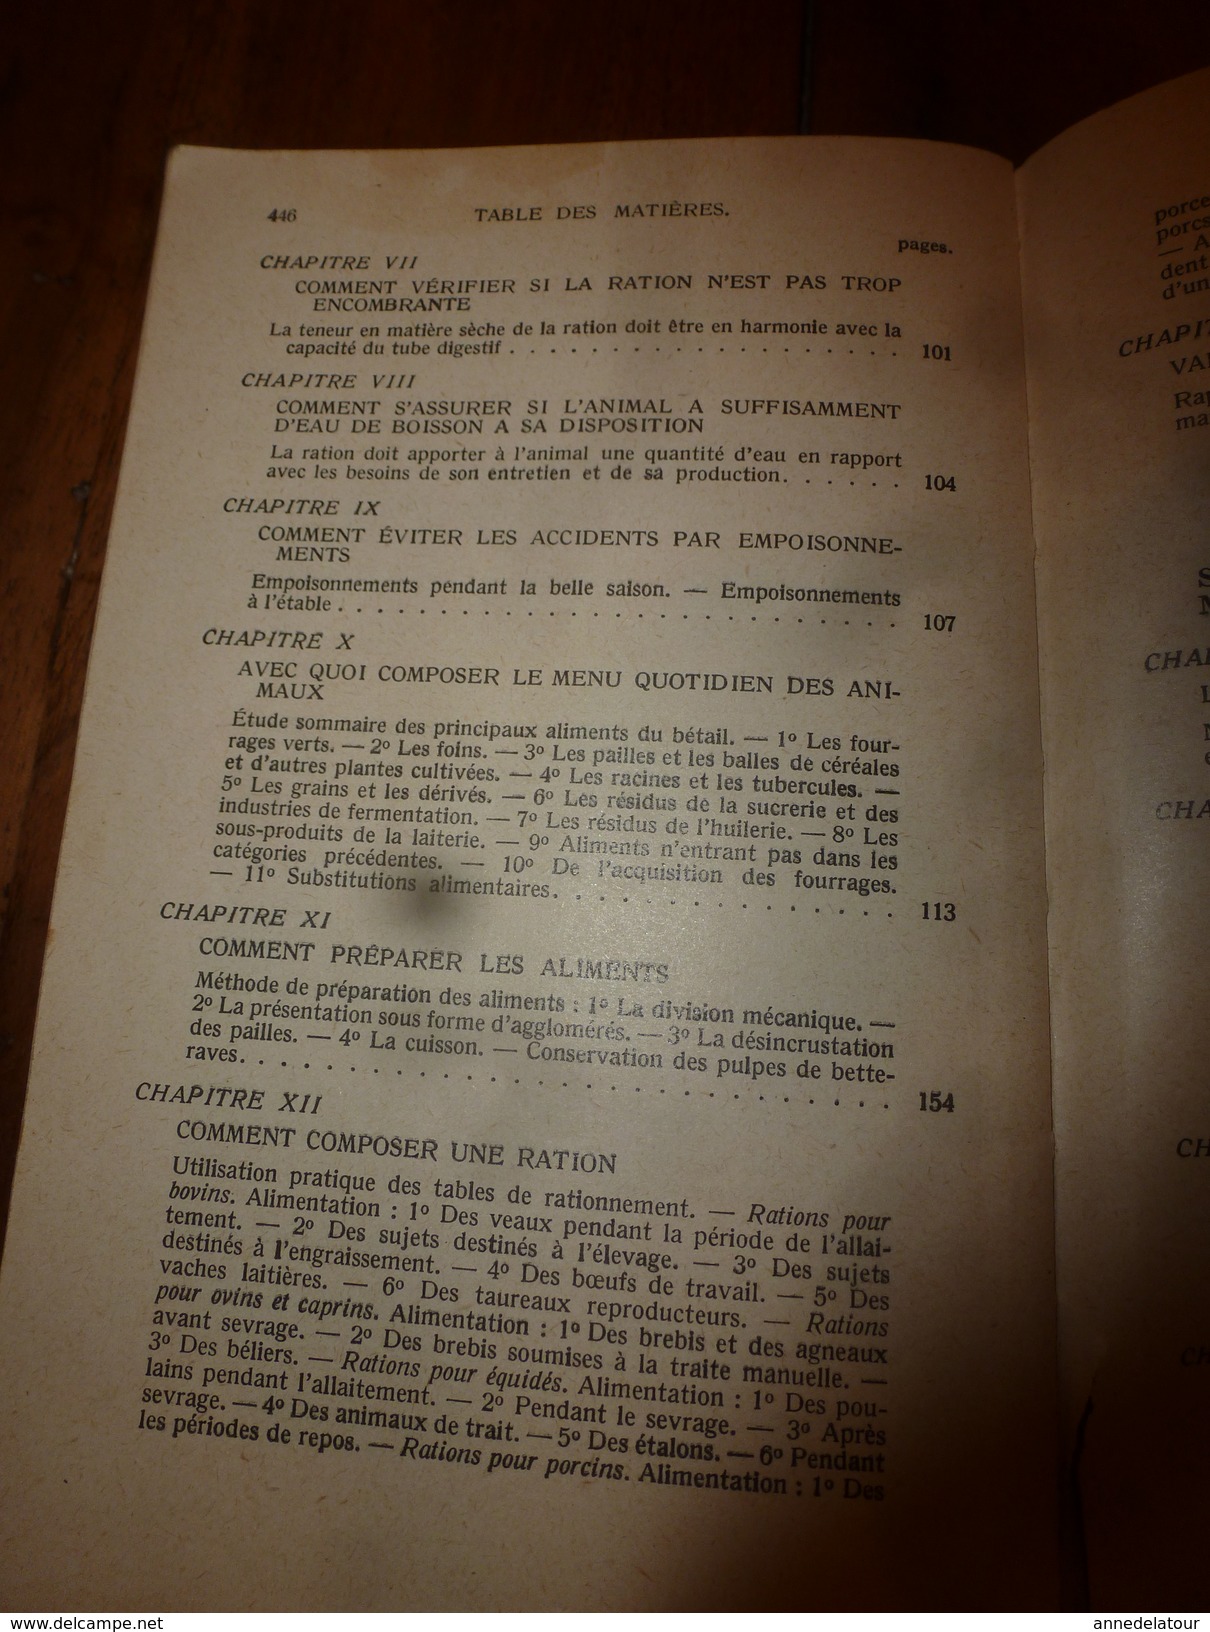 1929 Encyclopédie des connaissances agricoles par André Leroy--Elevage rationnel des animaux domestiques (Zootechnie)